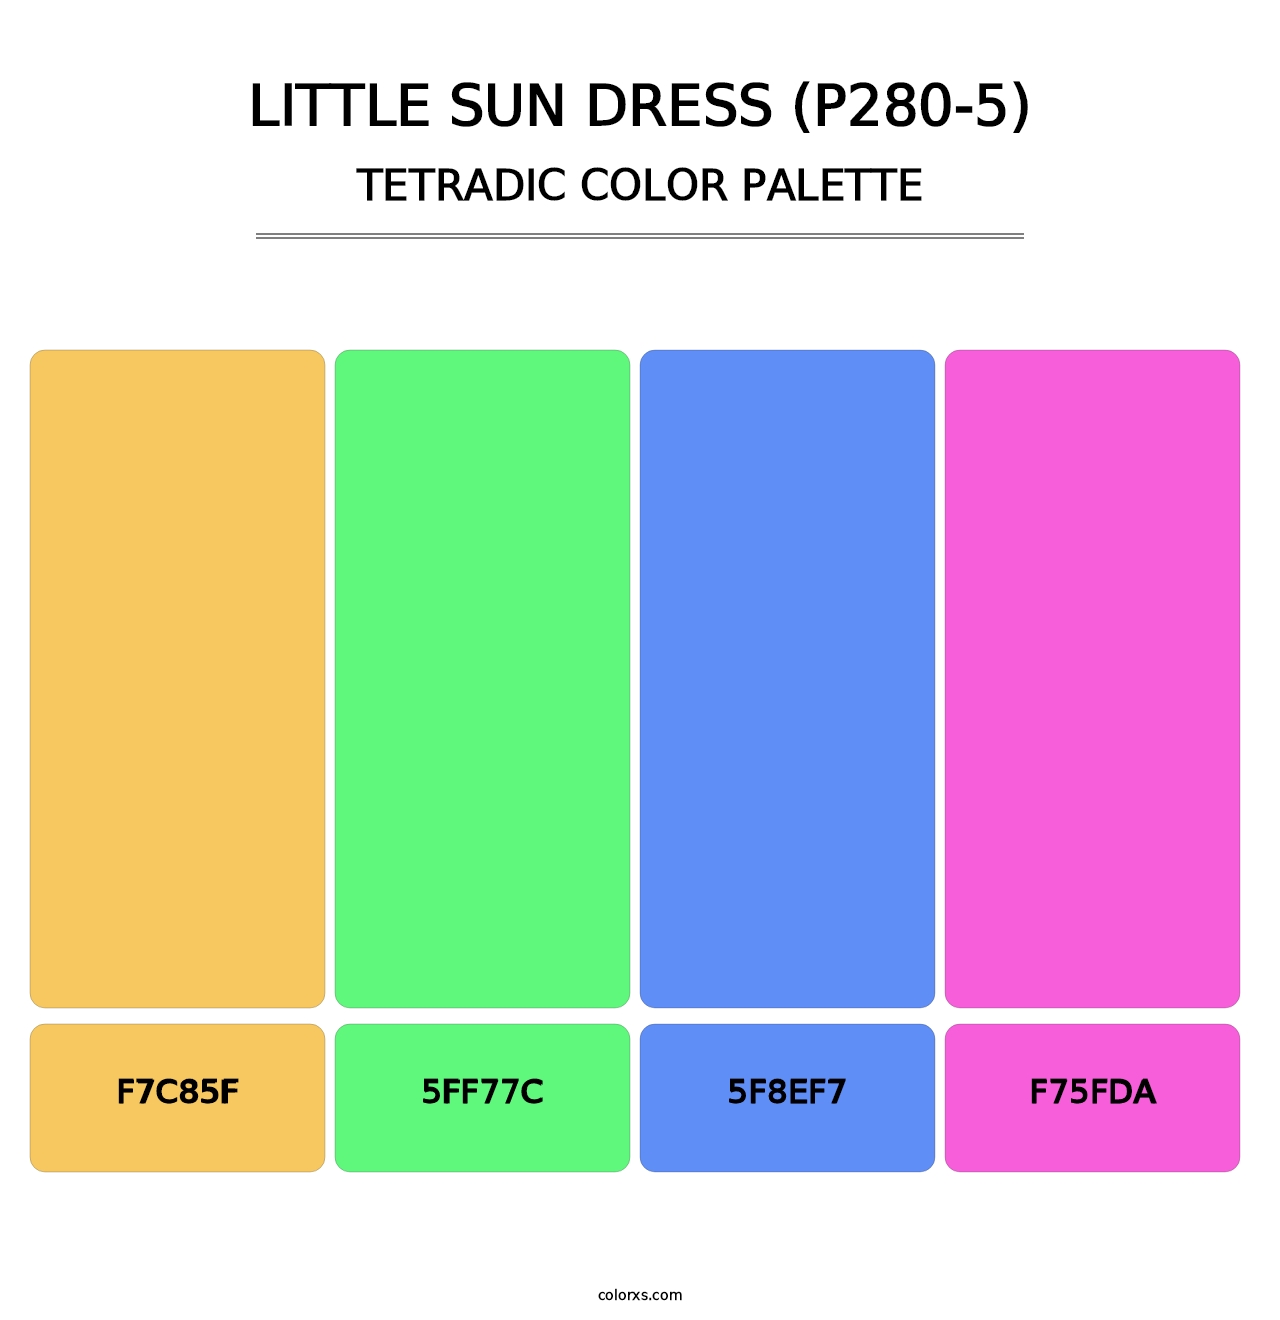 Little Sun Dress (P280-5) - Tetradic Color Palette